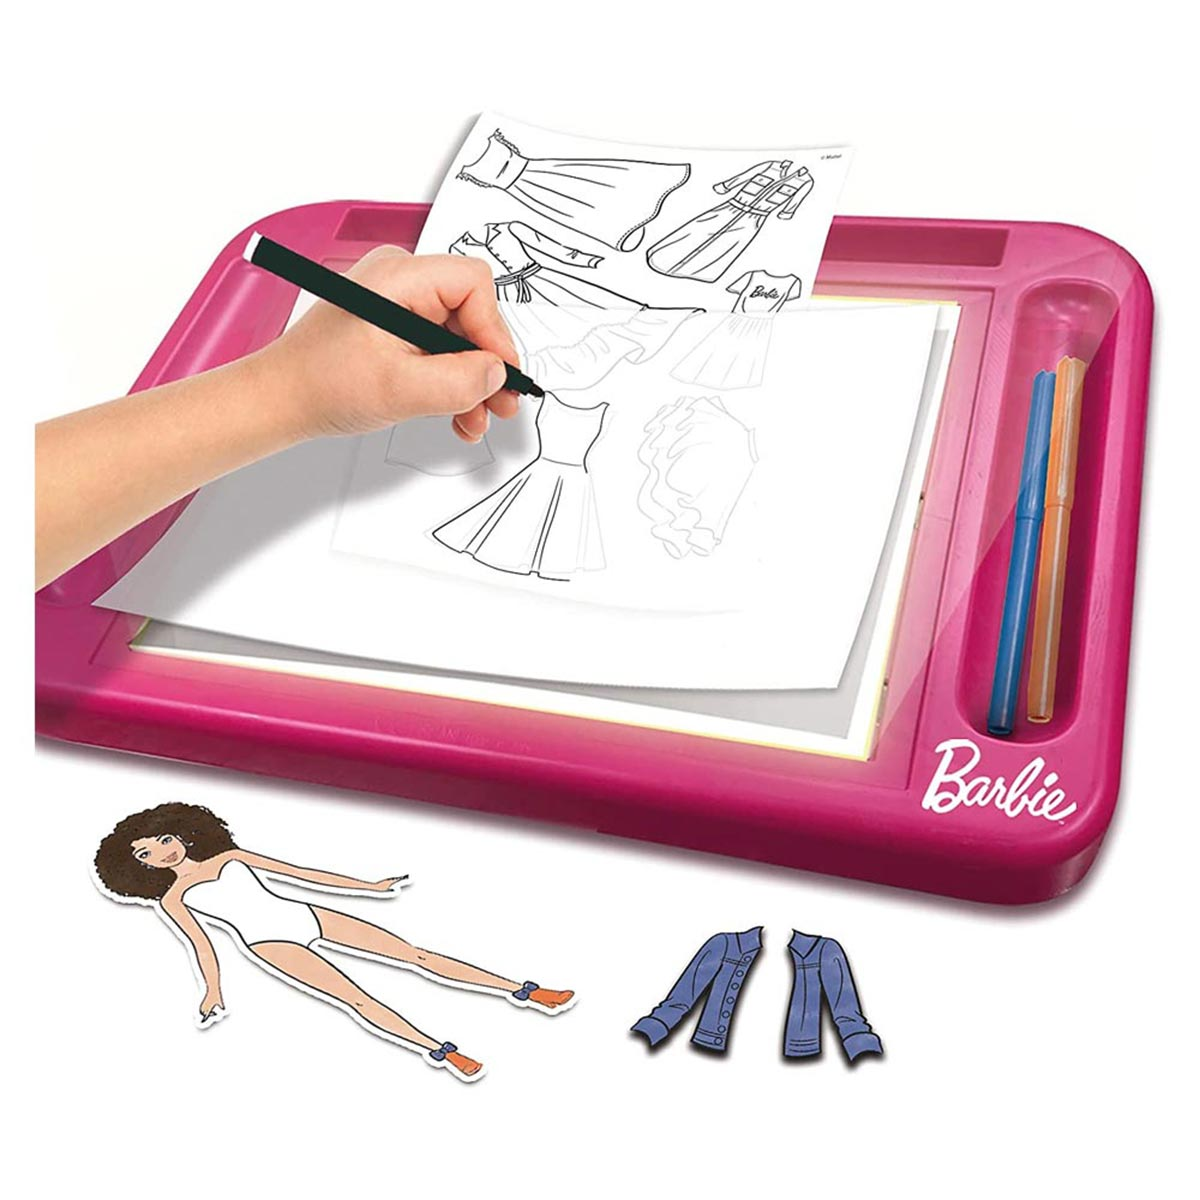 mehrfarbig von Atelier BARBIE Barbie Puppe, Lisciani mit Lernspiele, Fashion Barbie Barbie